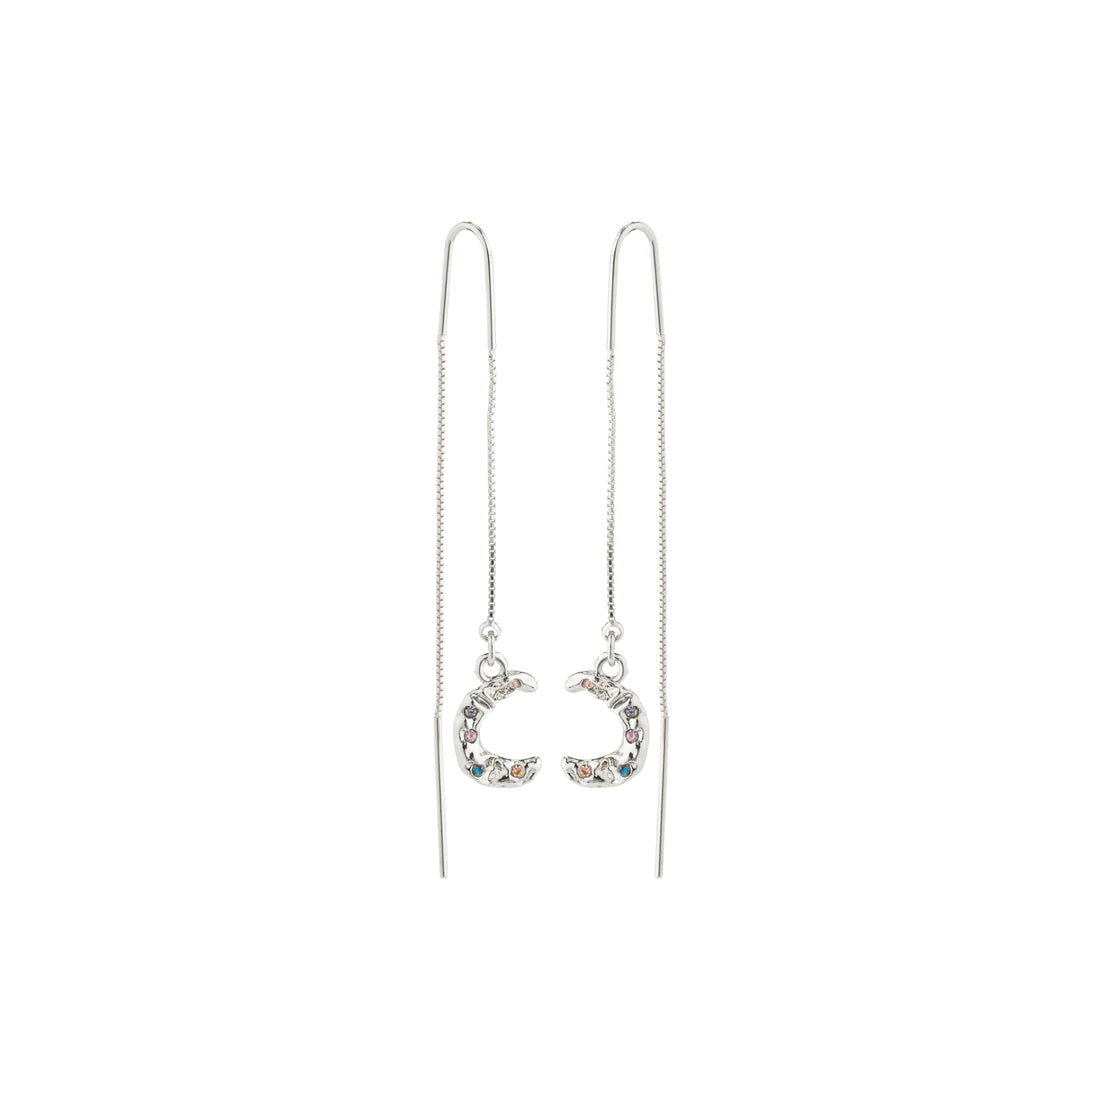 Remy Chain Earrings - silver